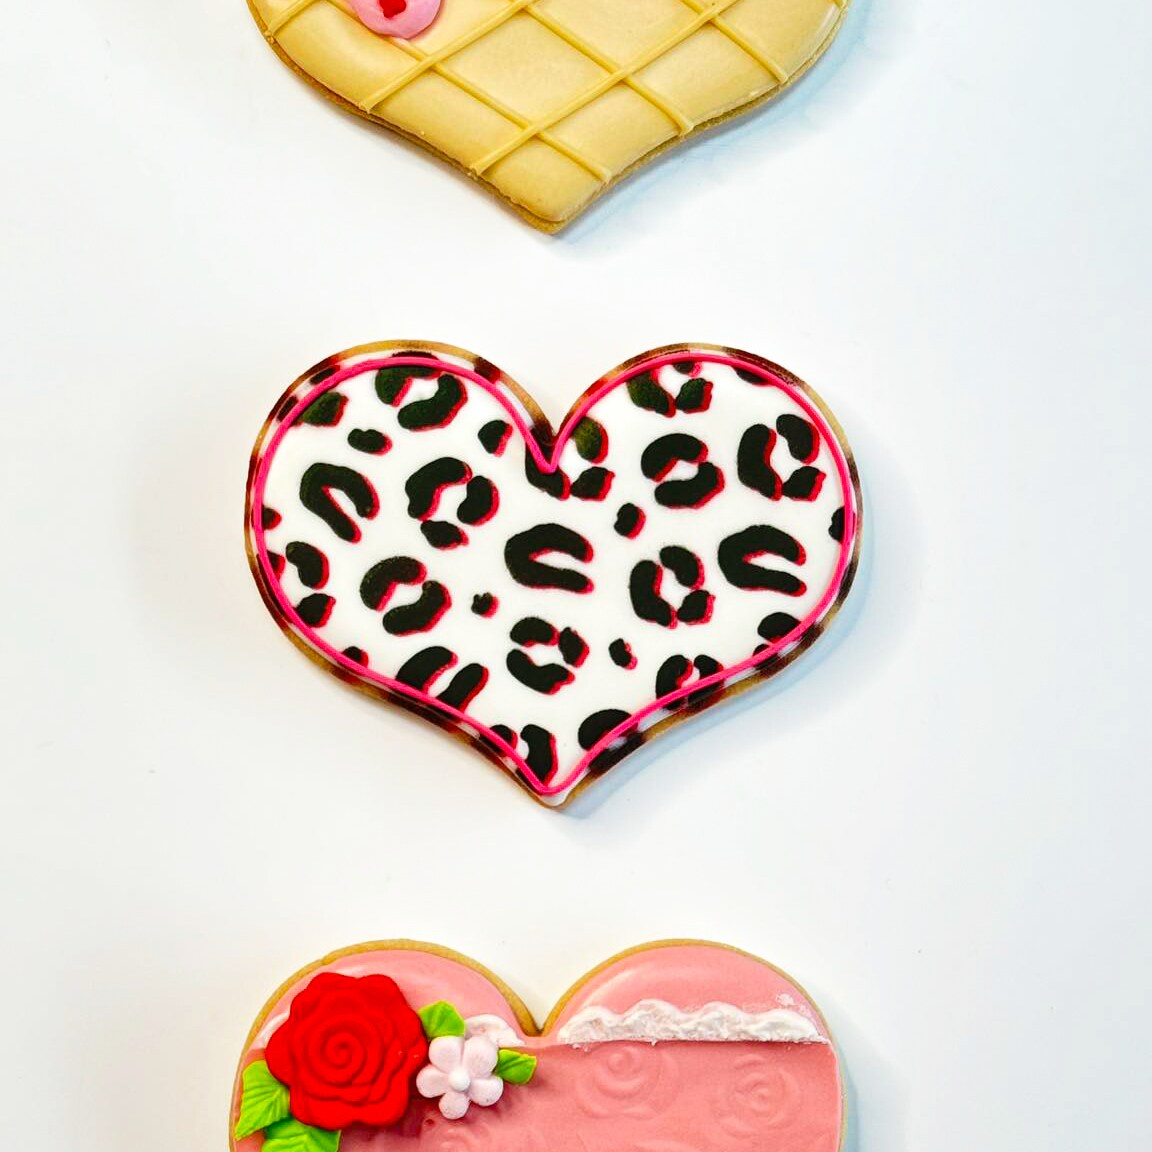 Heartfelt Delights: A Cookie Decorating Trio